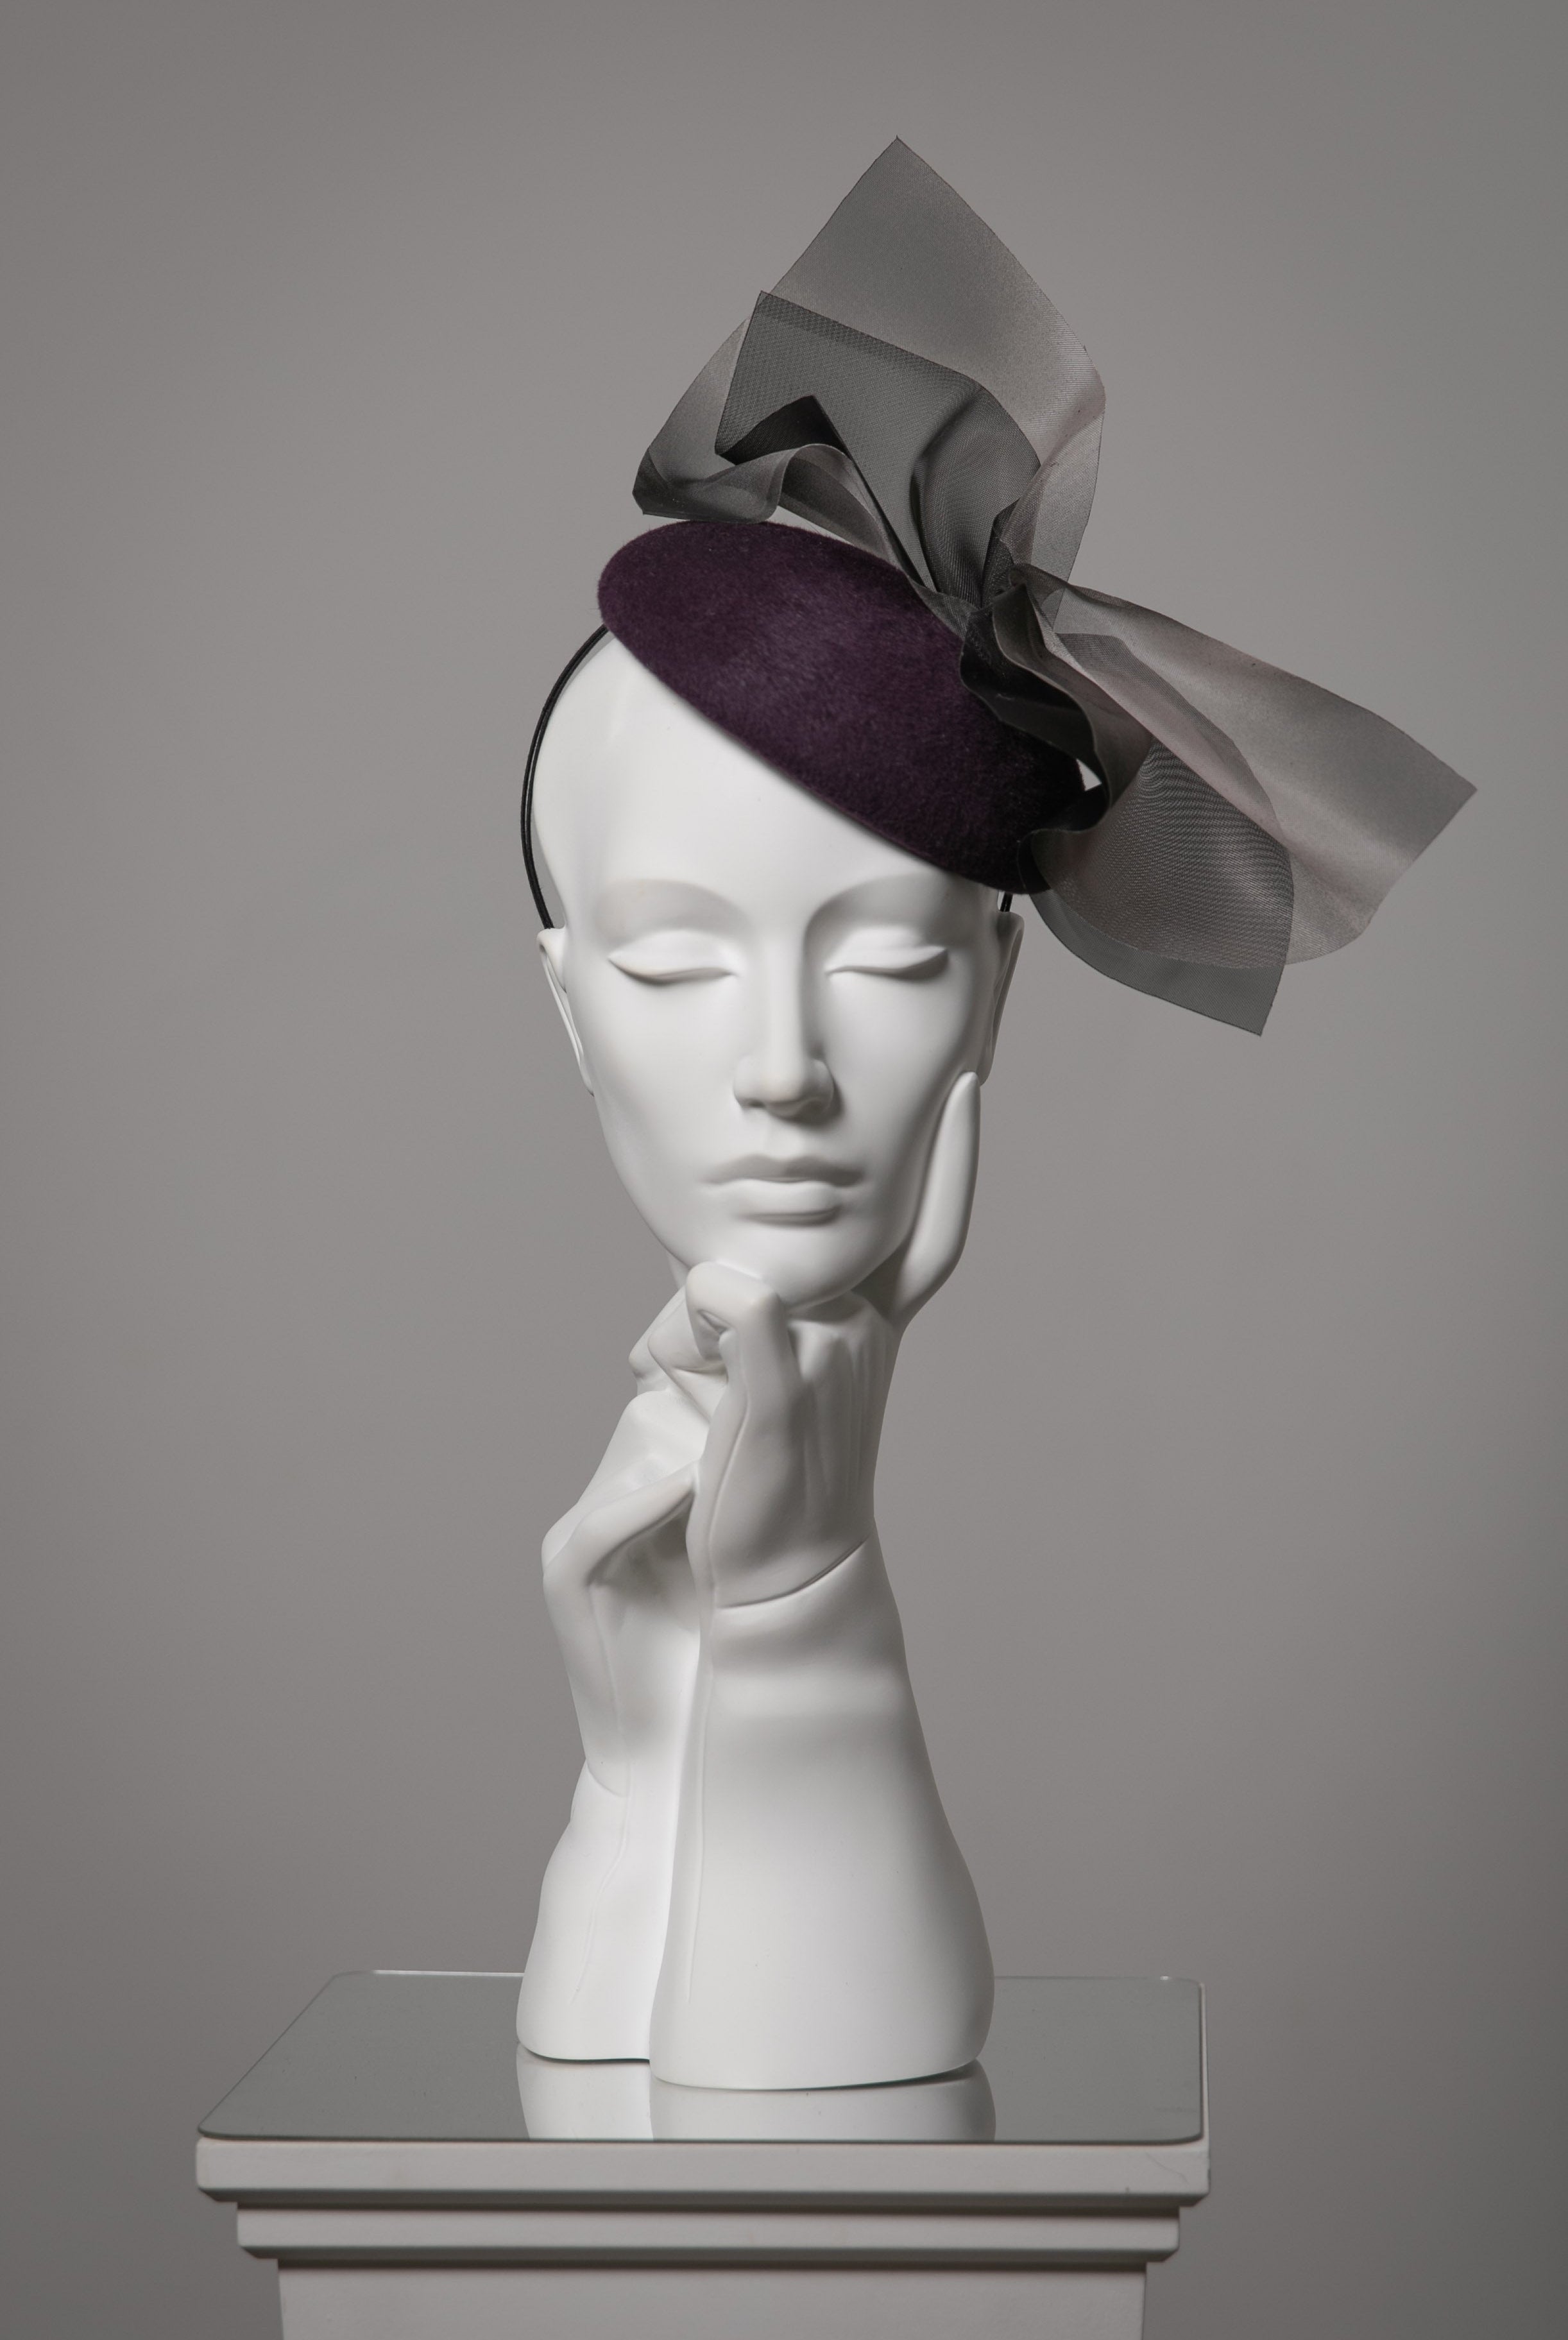 クリンのフェルト帽子 - ダルシー - マギー・モウブレイ製帽所